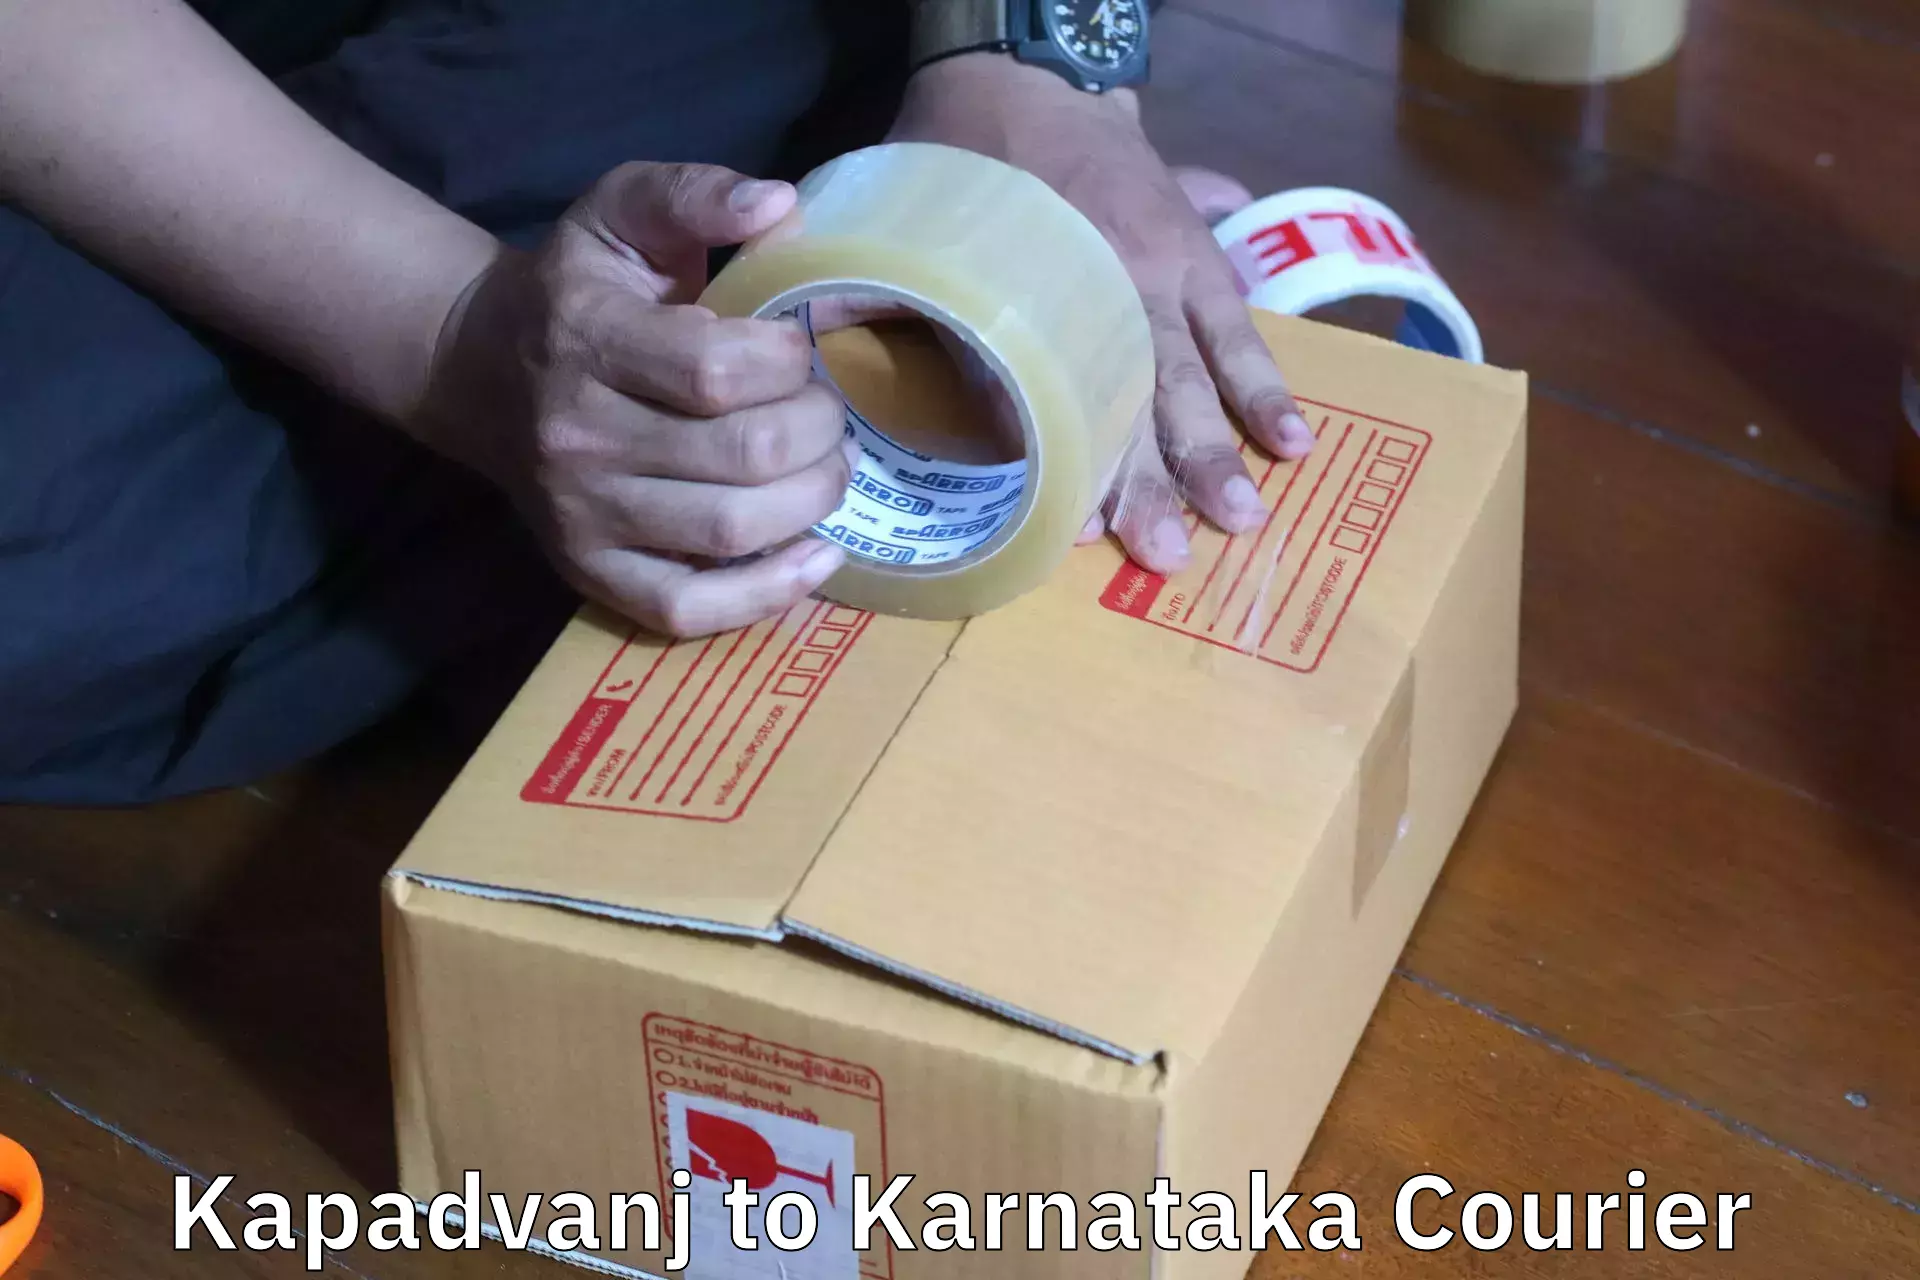 Furniture moving plans Kapadvanj to Karnataka